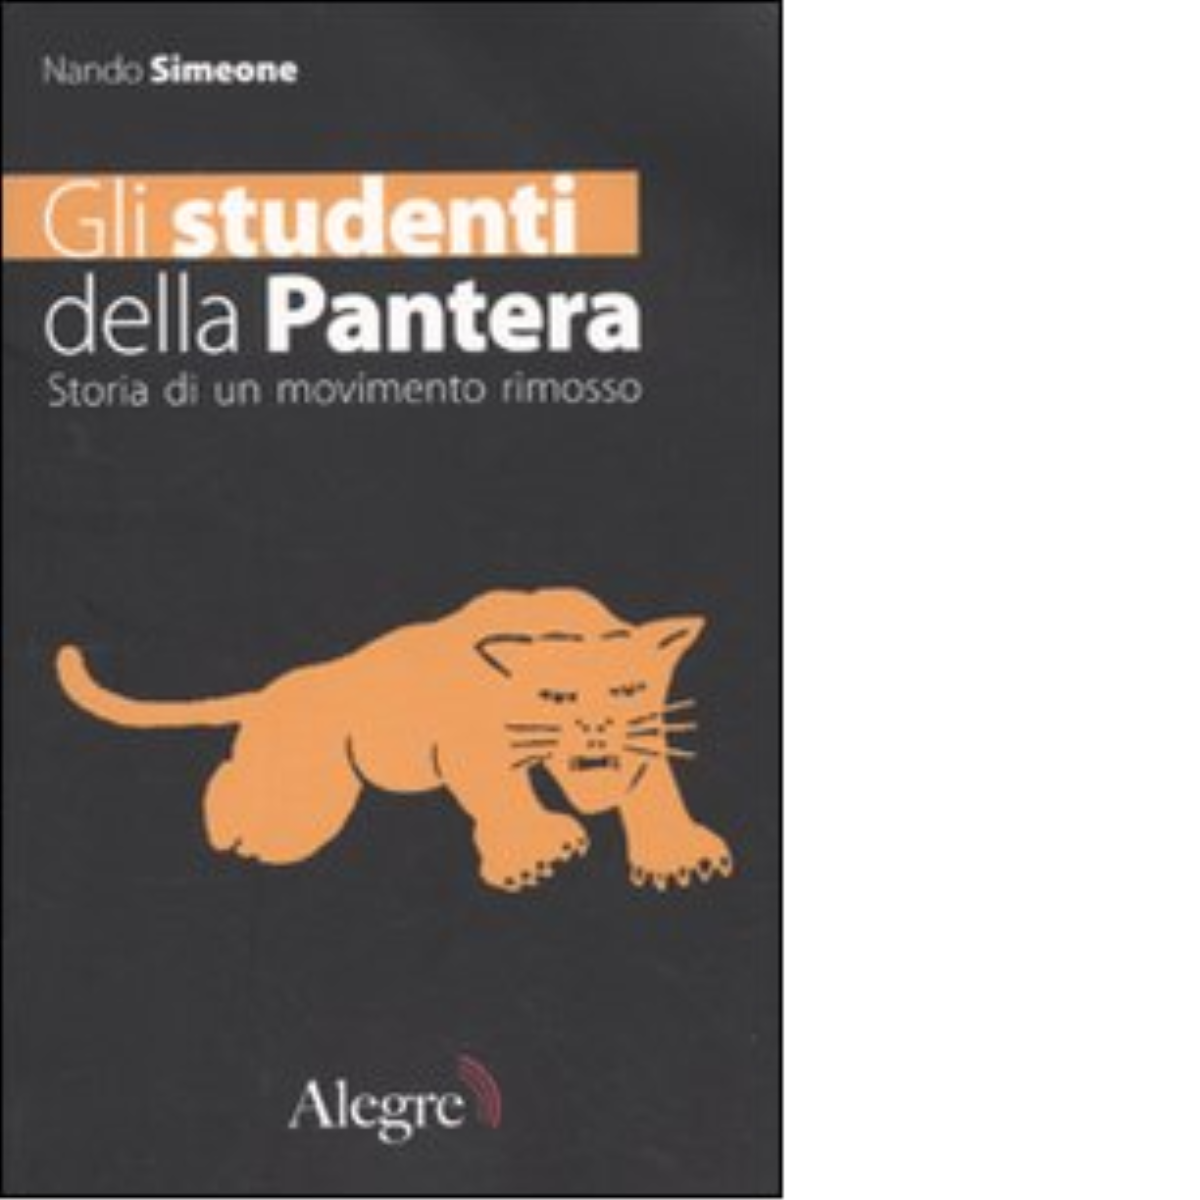 GLI STUDENTI DELLA PANTERA di NANDO SIMEONE - edizioni alegre, 2006